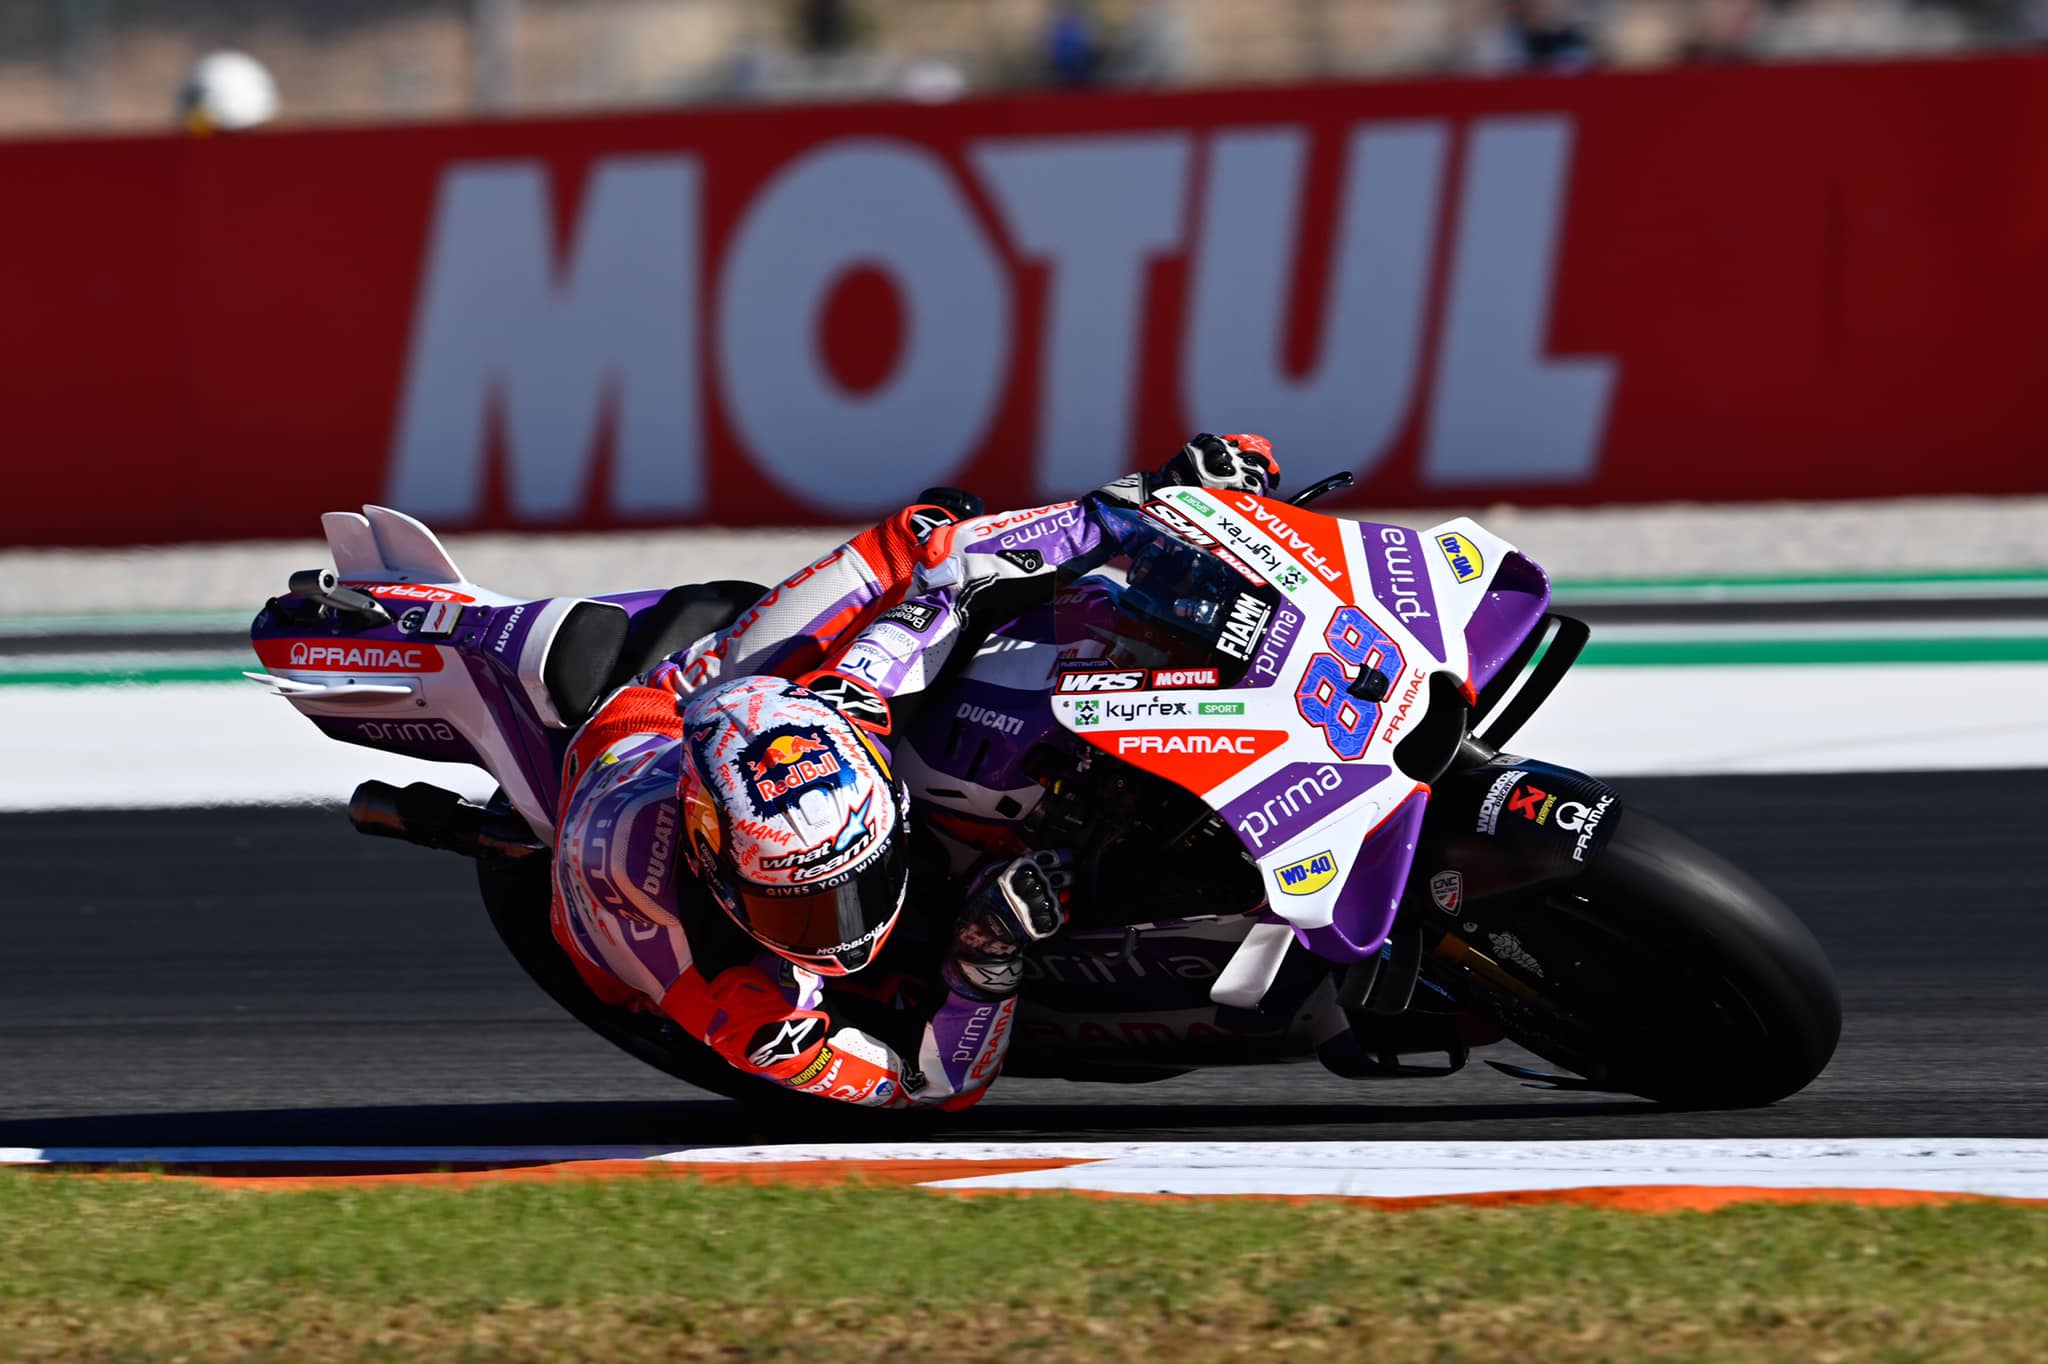 Sprint MotoGP Valencia: Martin Juara Dikawal Binder-Marquez, Pecco Bagnaia Geleng-geleng